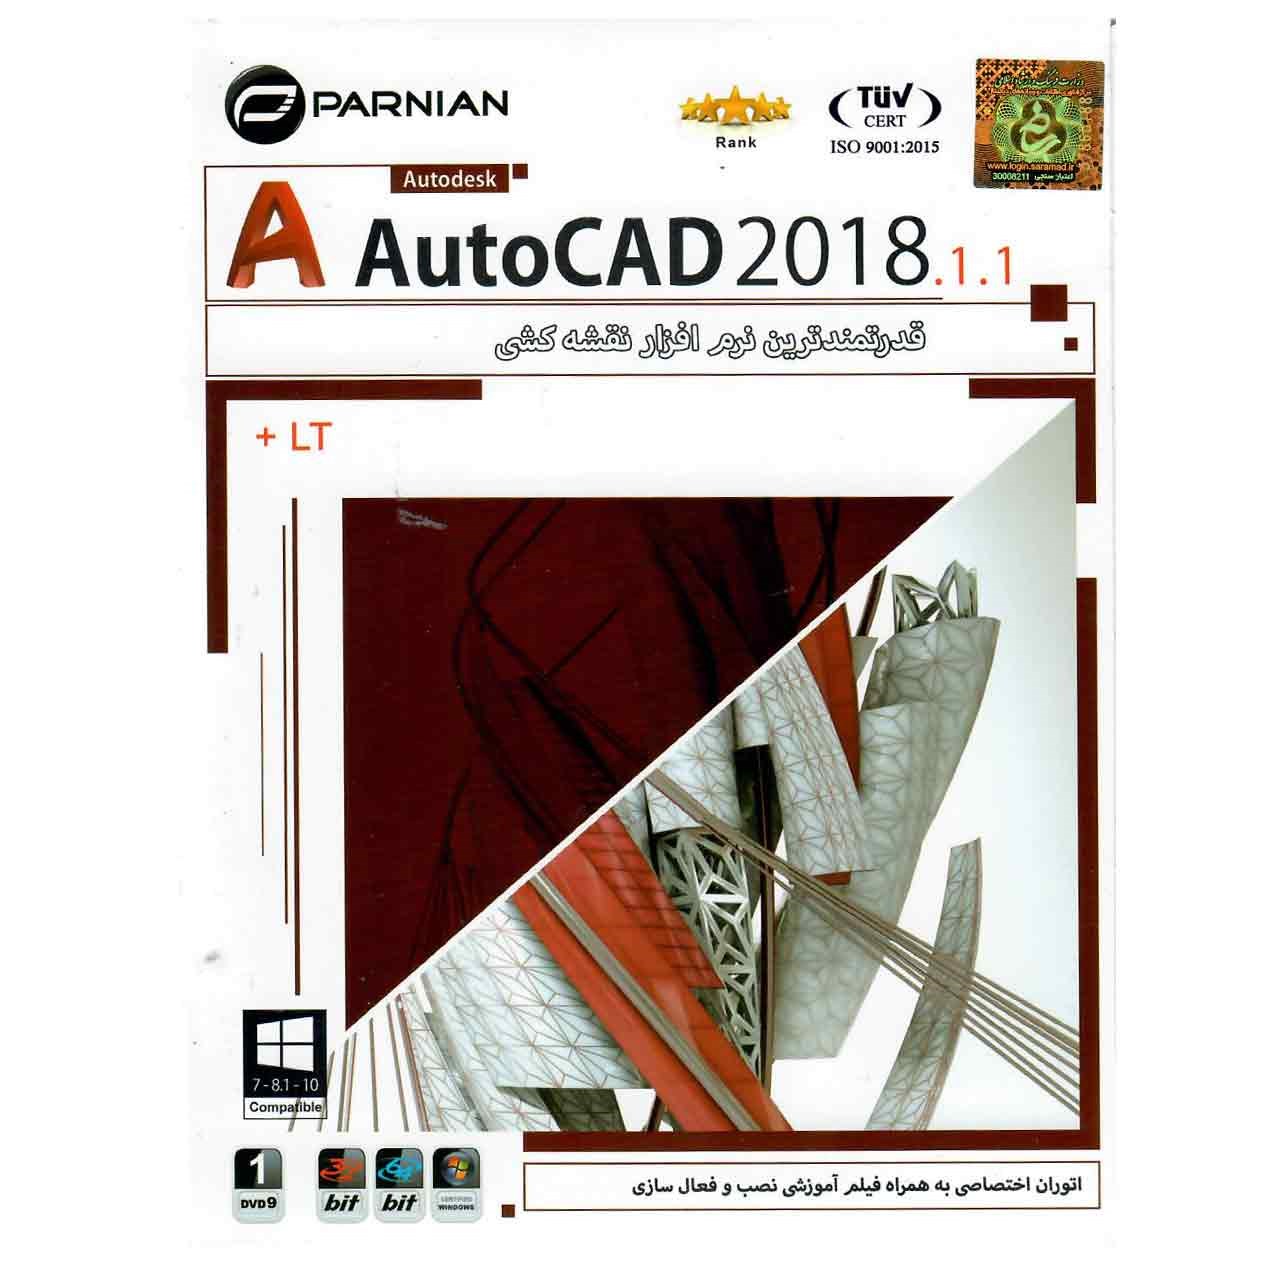 نرم افزار AutoCad 2018.1.1 نشر پرنیان